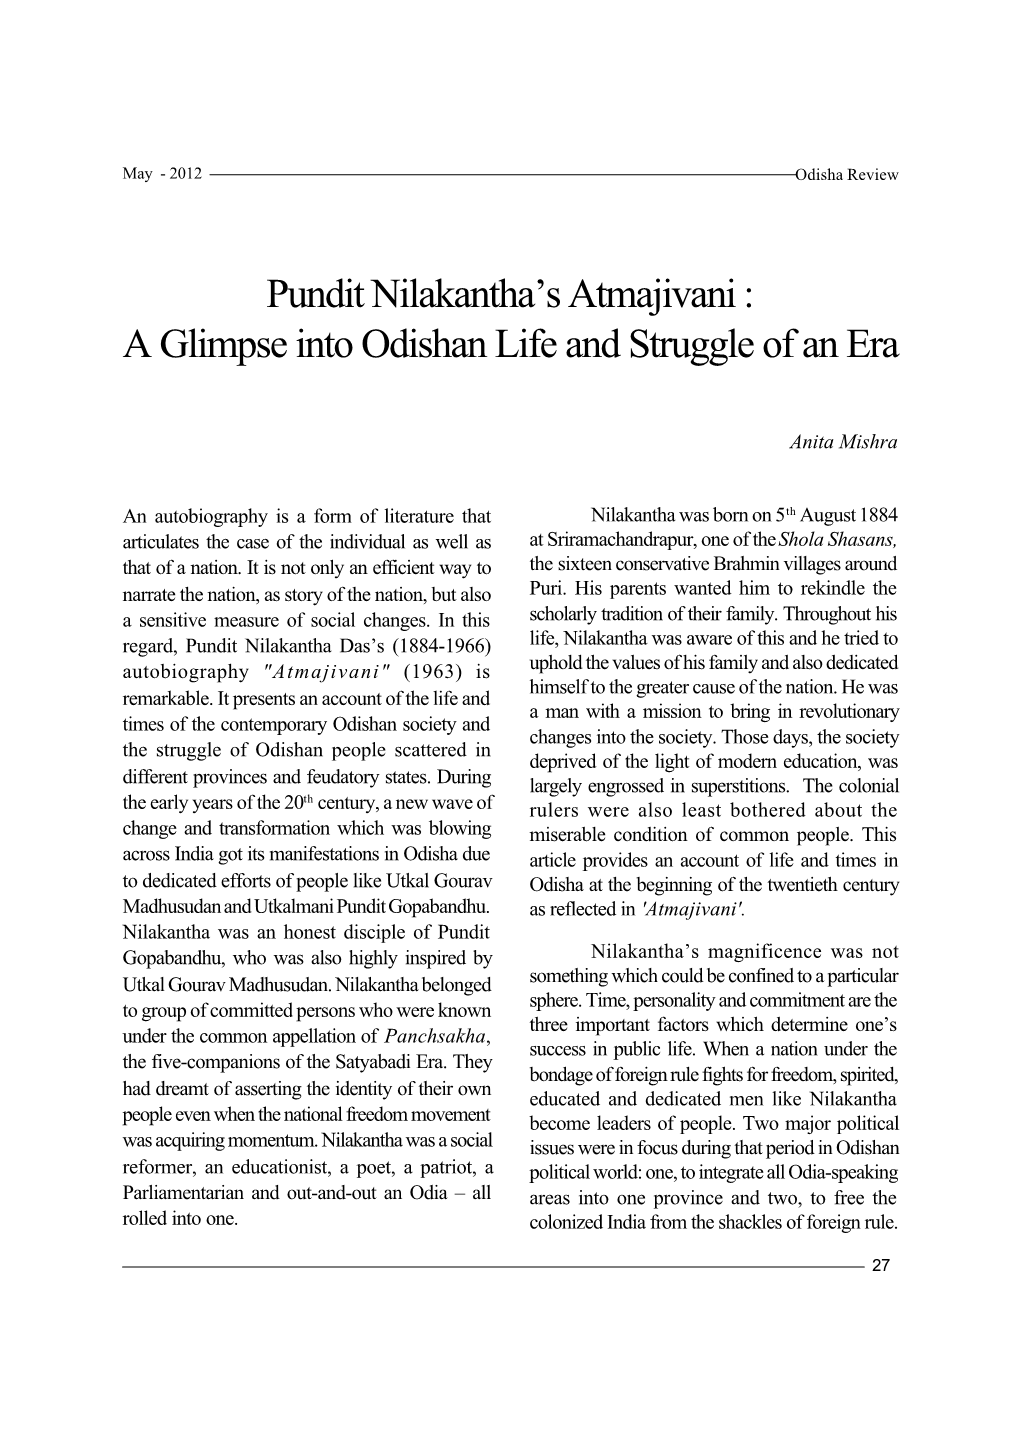 Pandit Nilakantha's Atmajivani